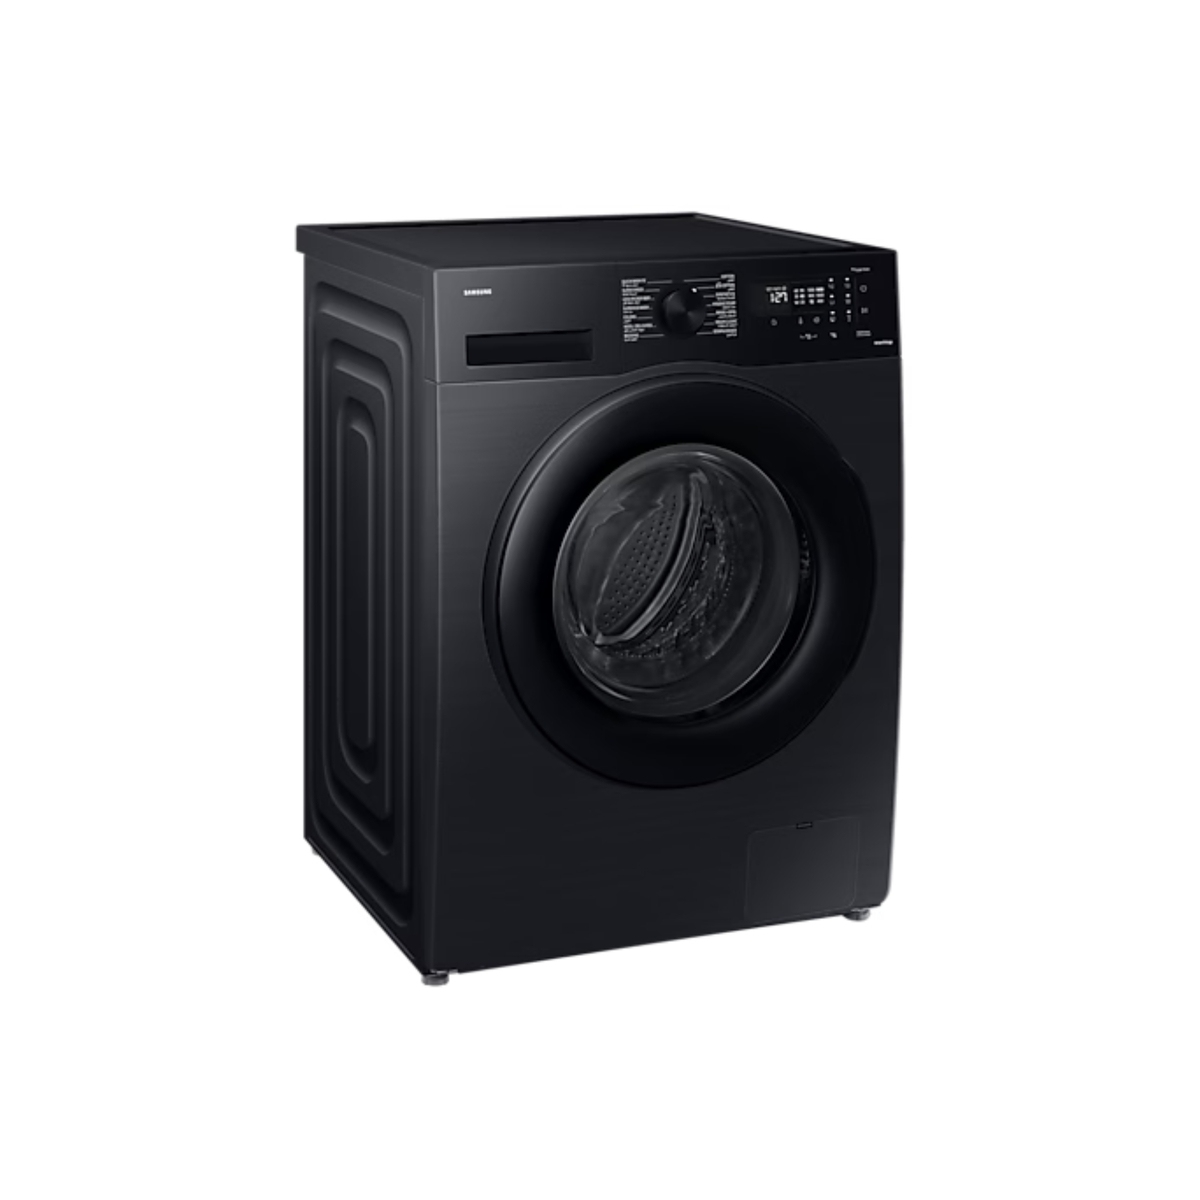 Samsung Front load Washing Machine, 11 kg, 1400 RPM, Black, WW11CGC04DABSG